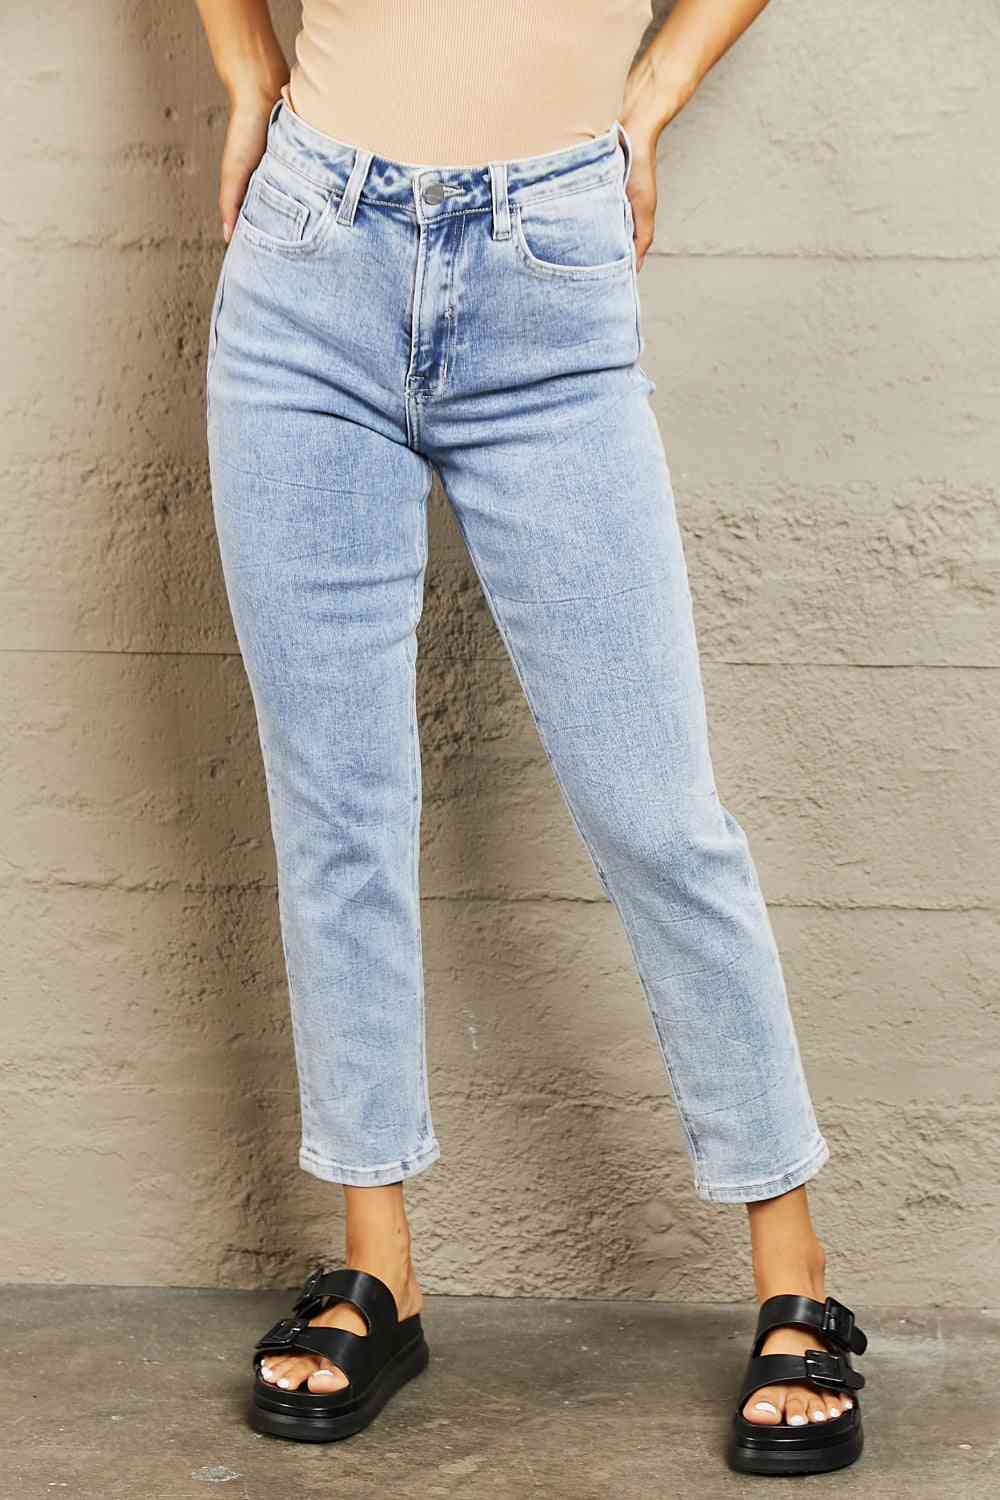 BAYEAS High Waisted Skinny Jeans - Pahabu